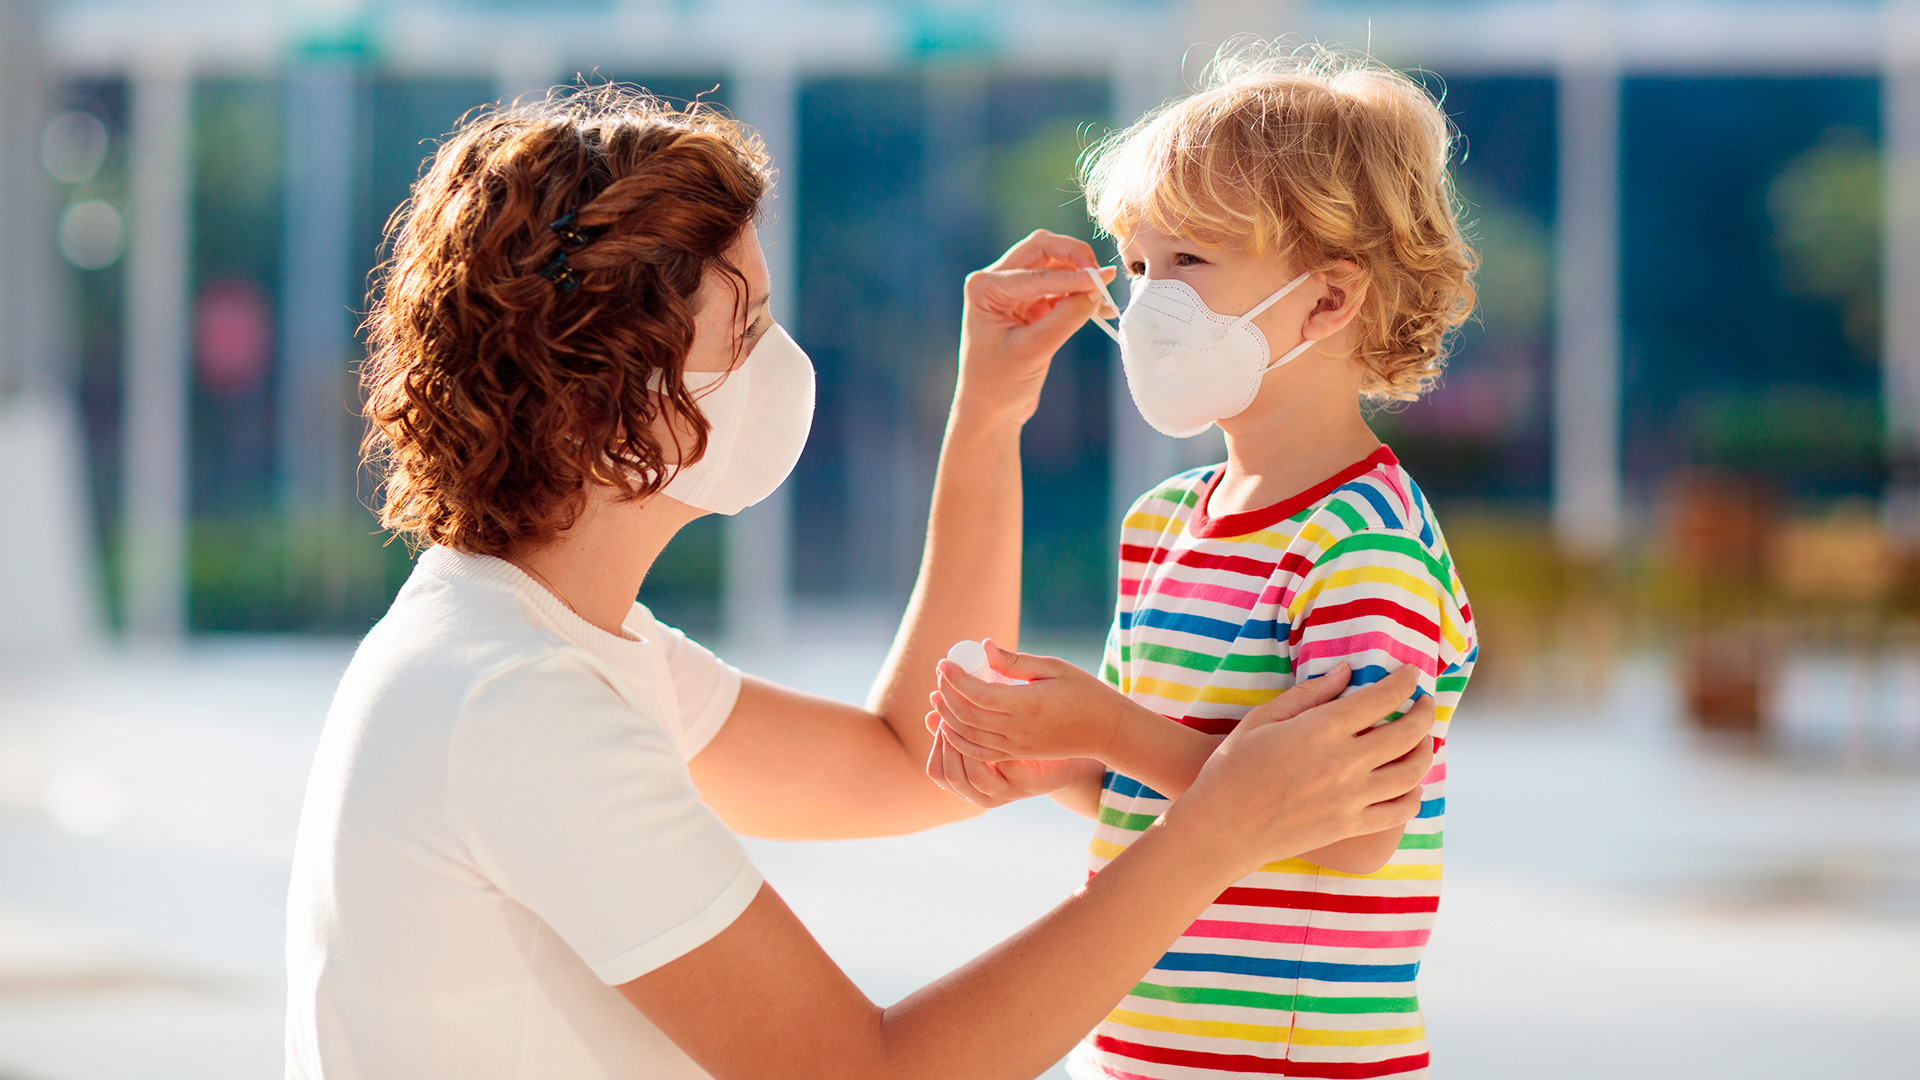 El número total de casos de COVID-19 en niños supera los 3,34 millones, y eso representa el 13,3% de los contagios entre todas las edades en los Estados Unidos (Shutterstock)